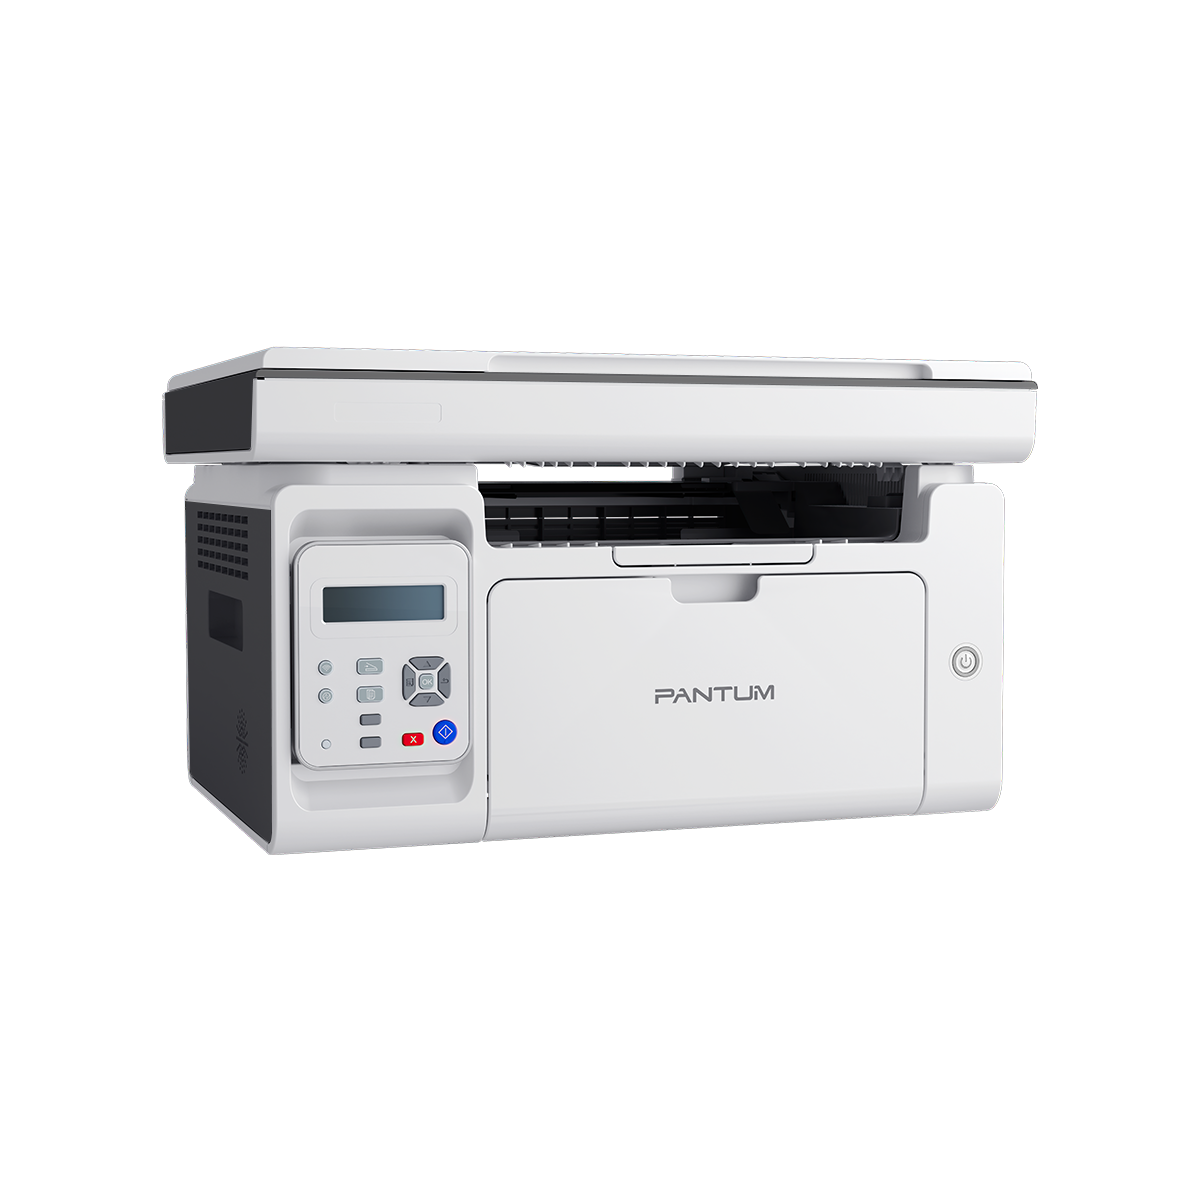 Pantum M6509NW Black/White Laser multifunction printer with WiFi